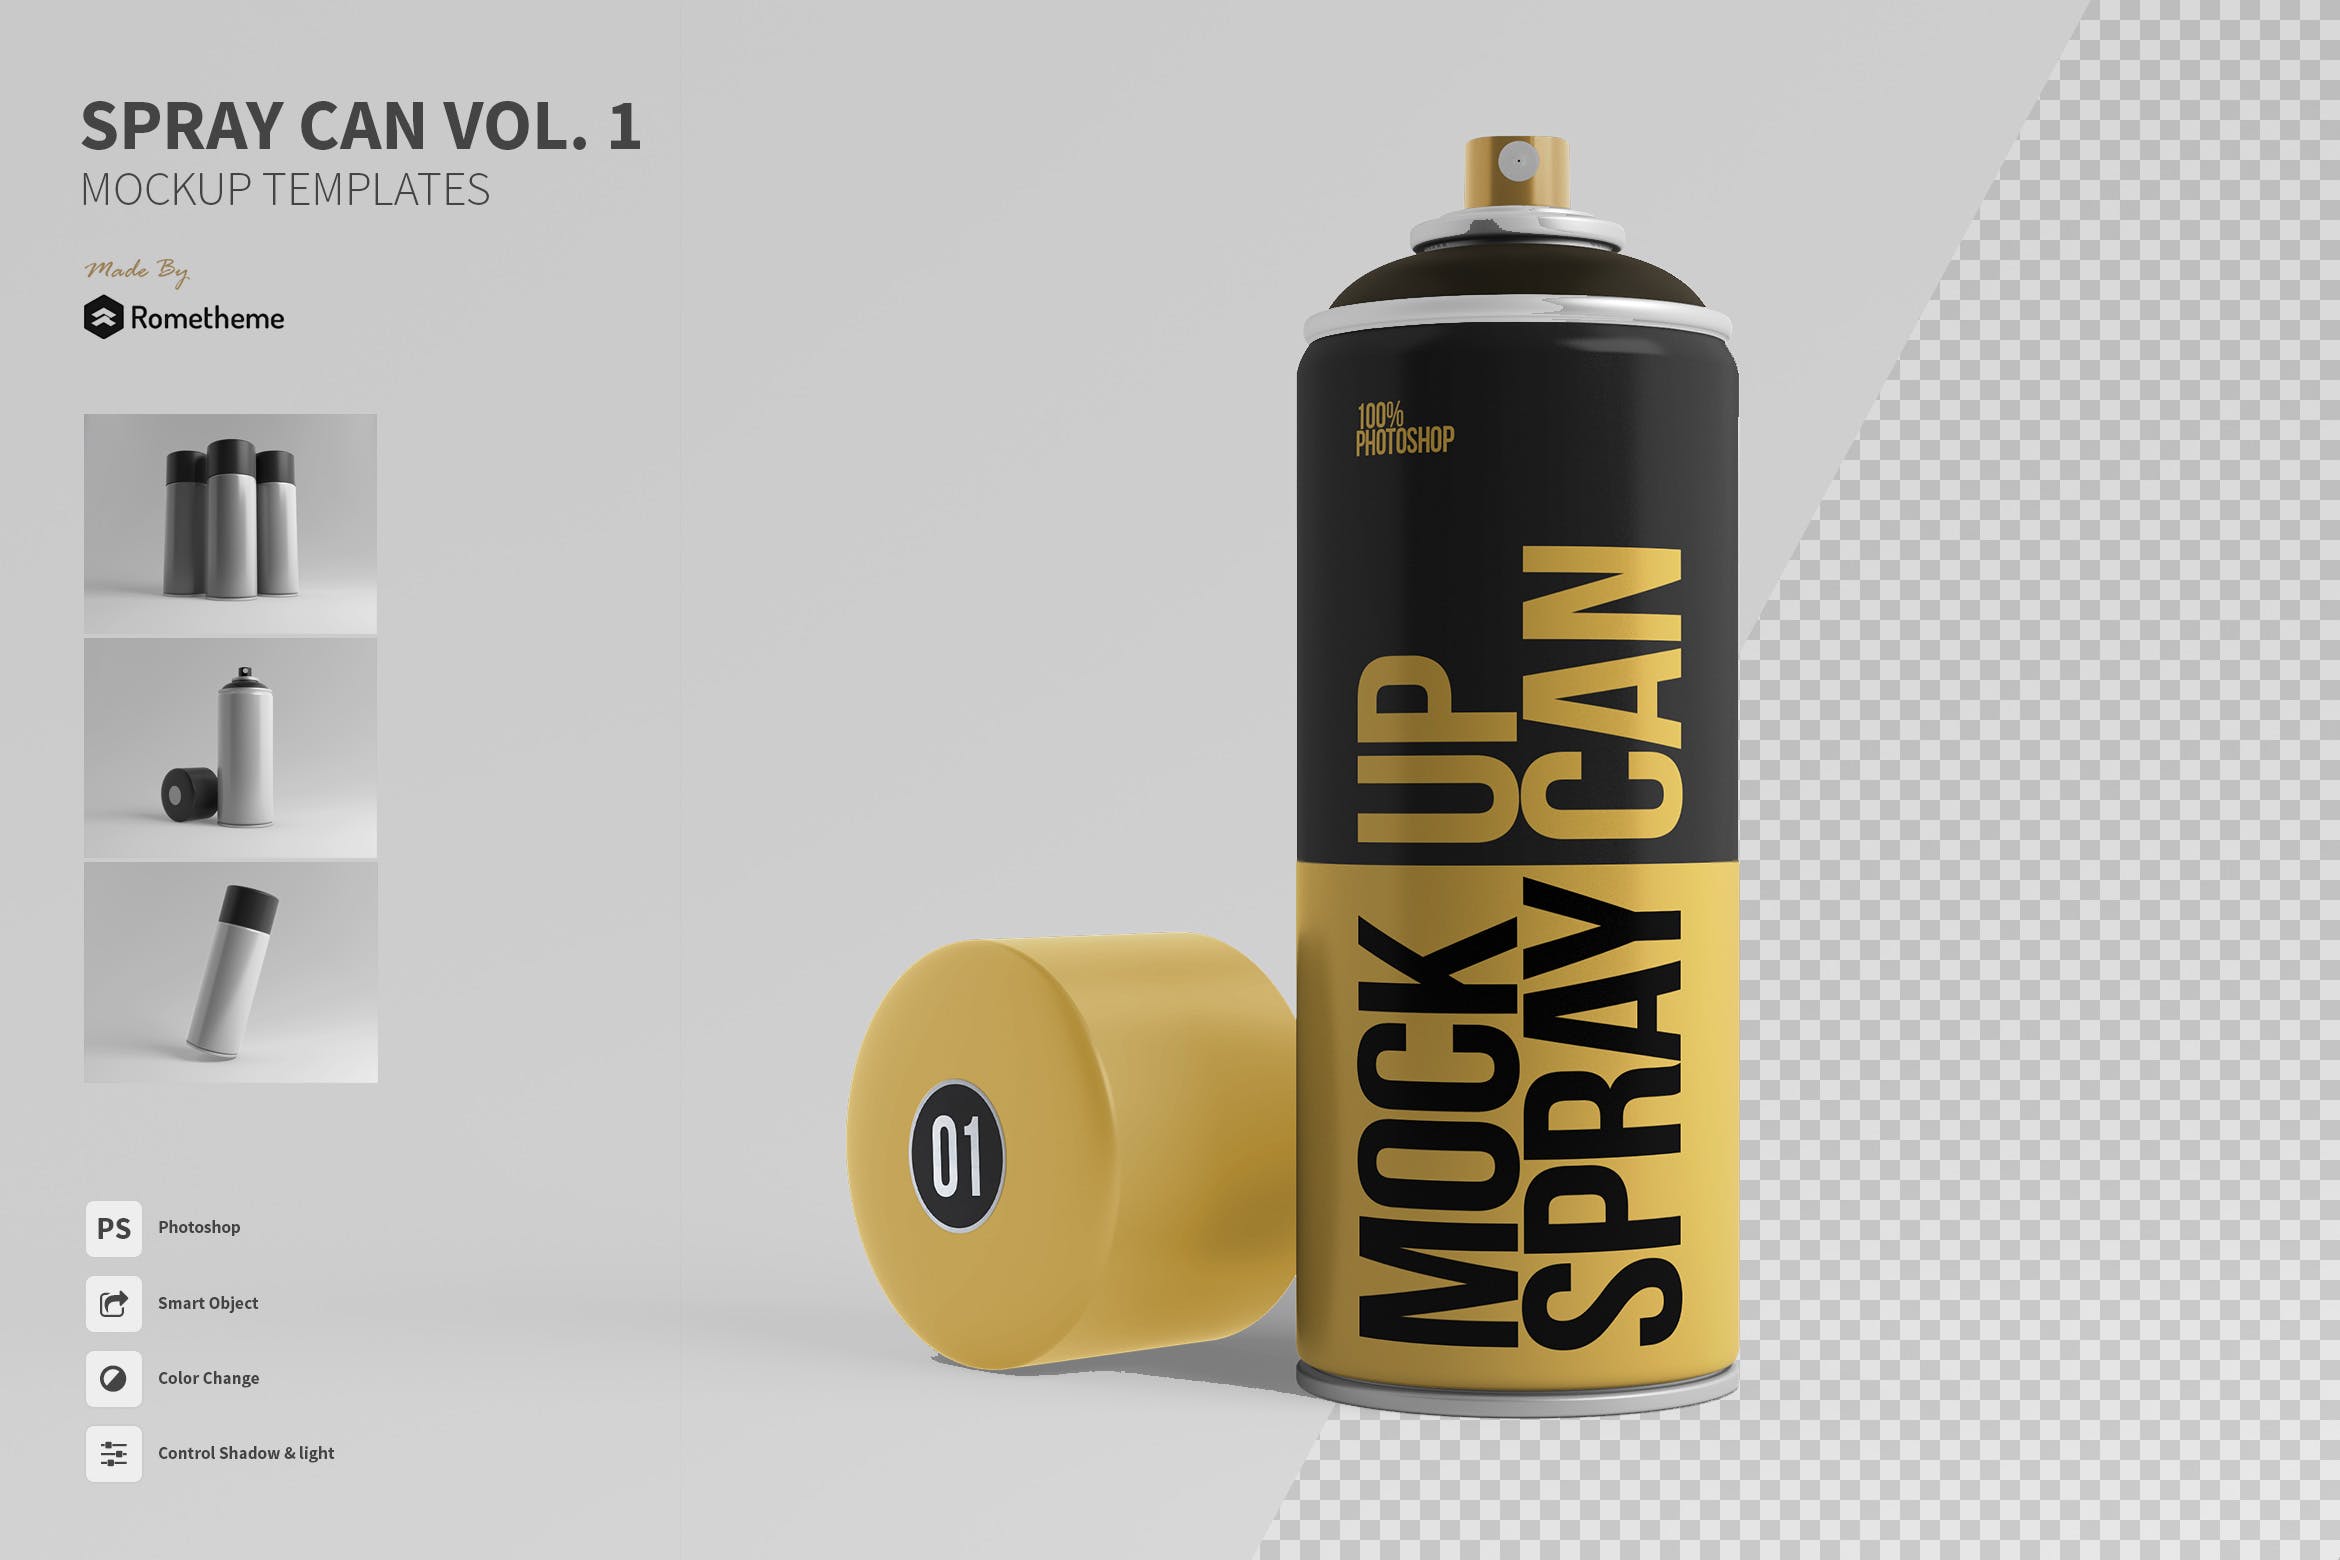 喷雾瓶外观设计样机模板v01 Spray Can Mockup Templates Vol. 01插图